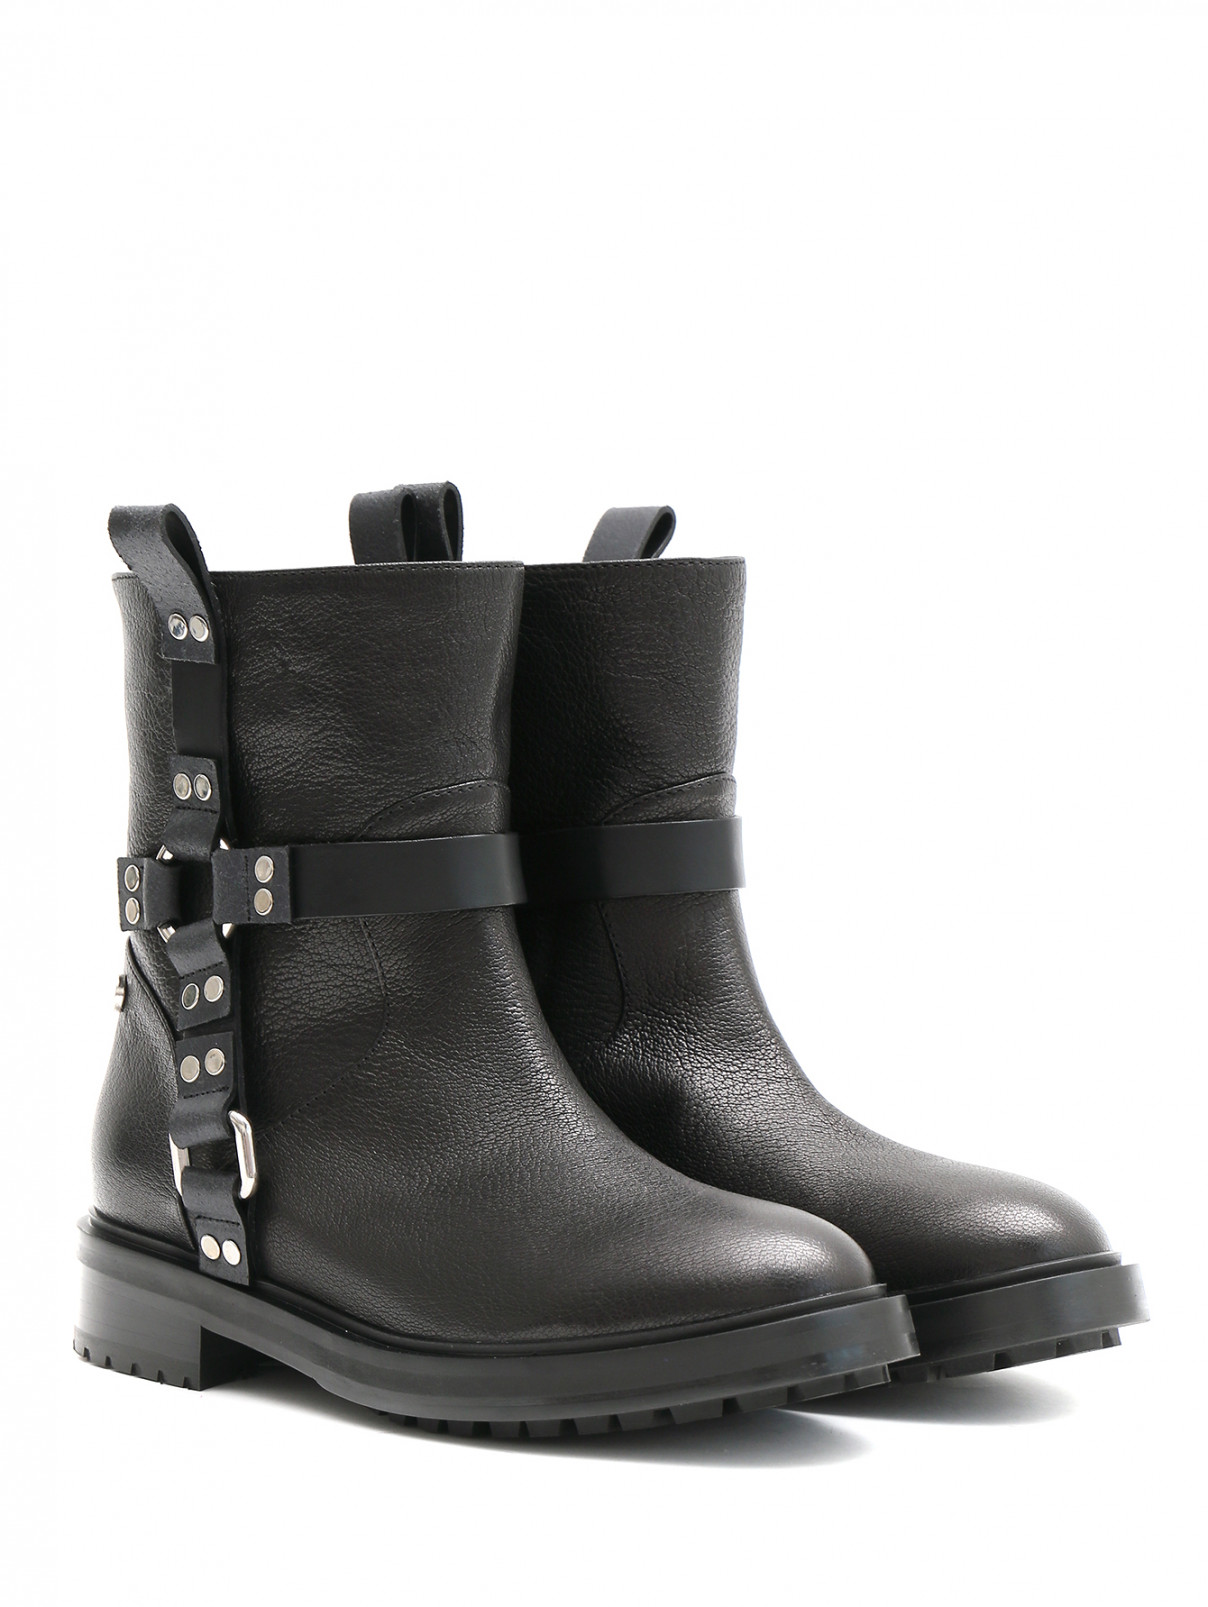 Ботинки из кожи с металлическими деталями Moschino Couture  –  Общий вид  – Цвет:  Черный